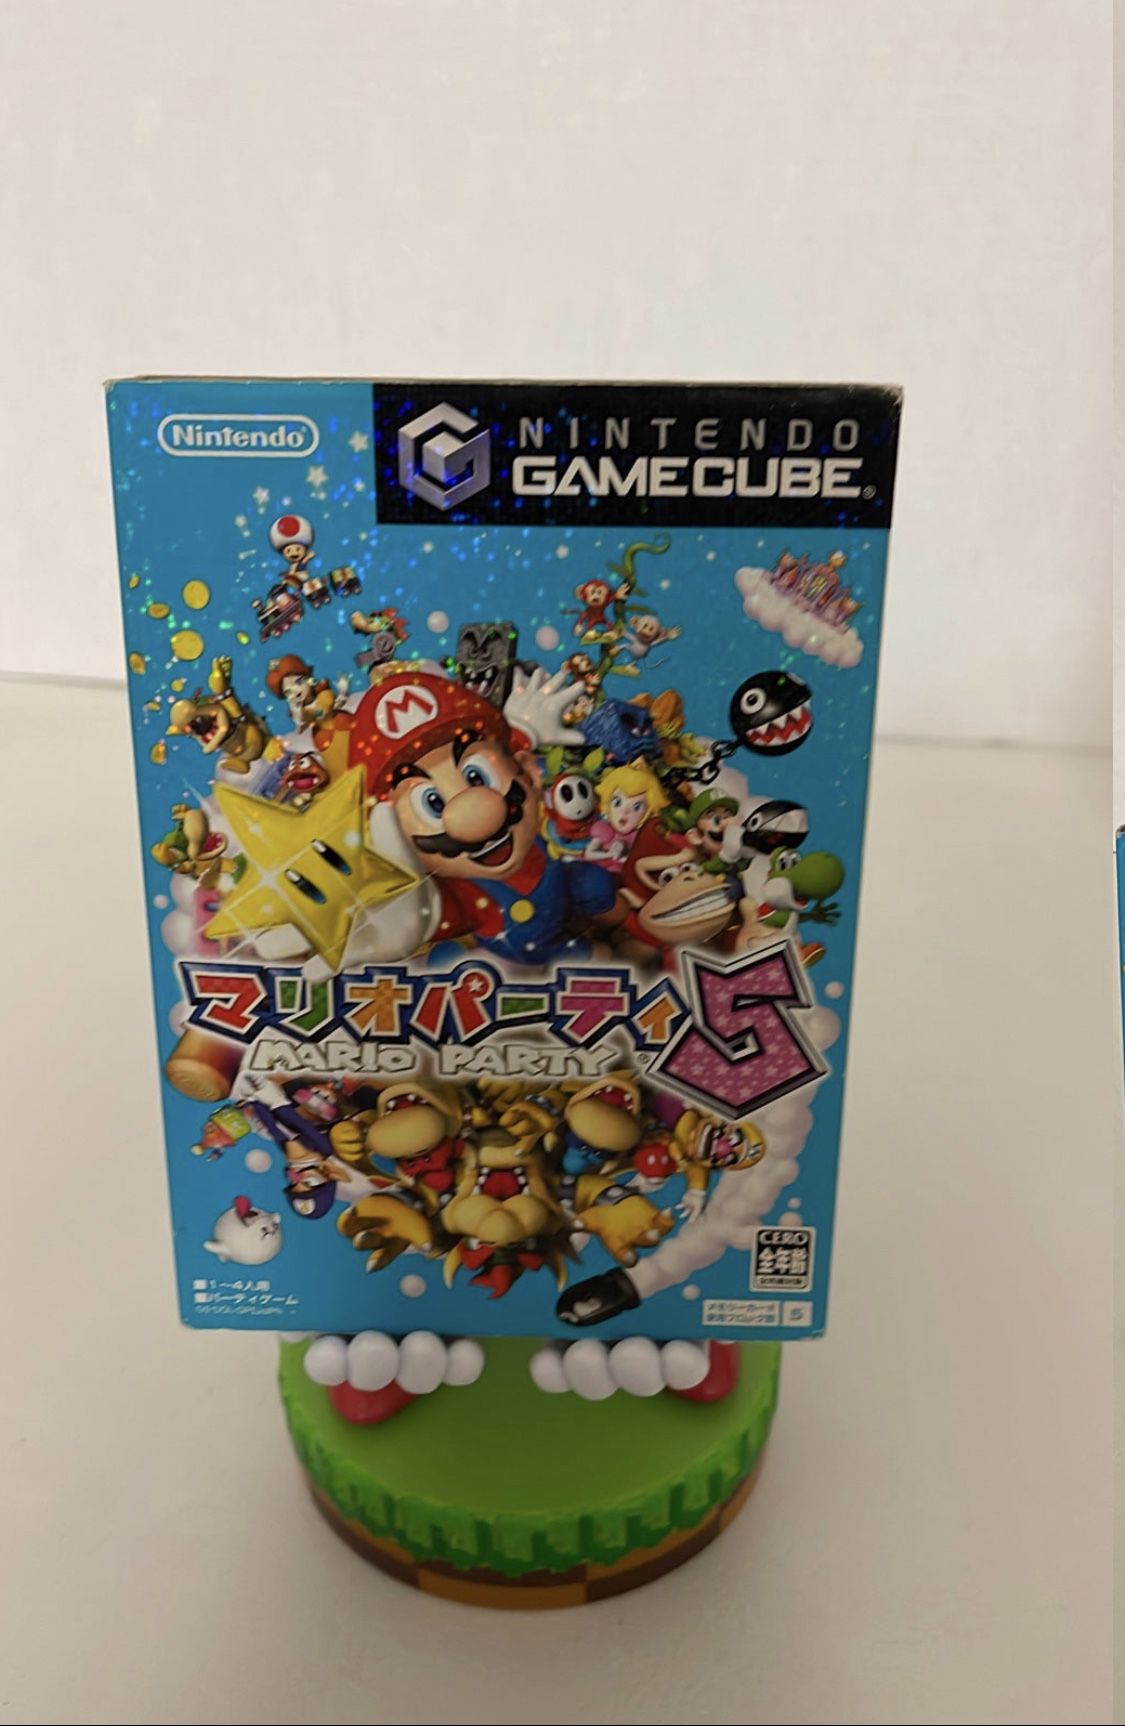 Mario Party 5 for Nintendo GameCube